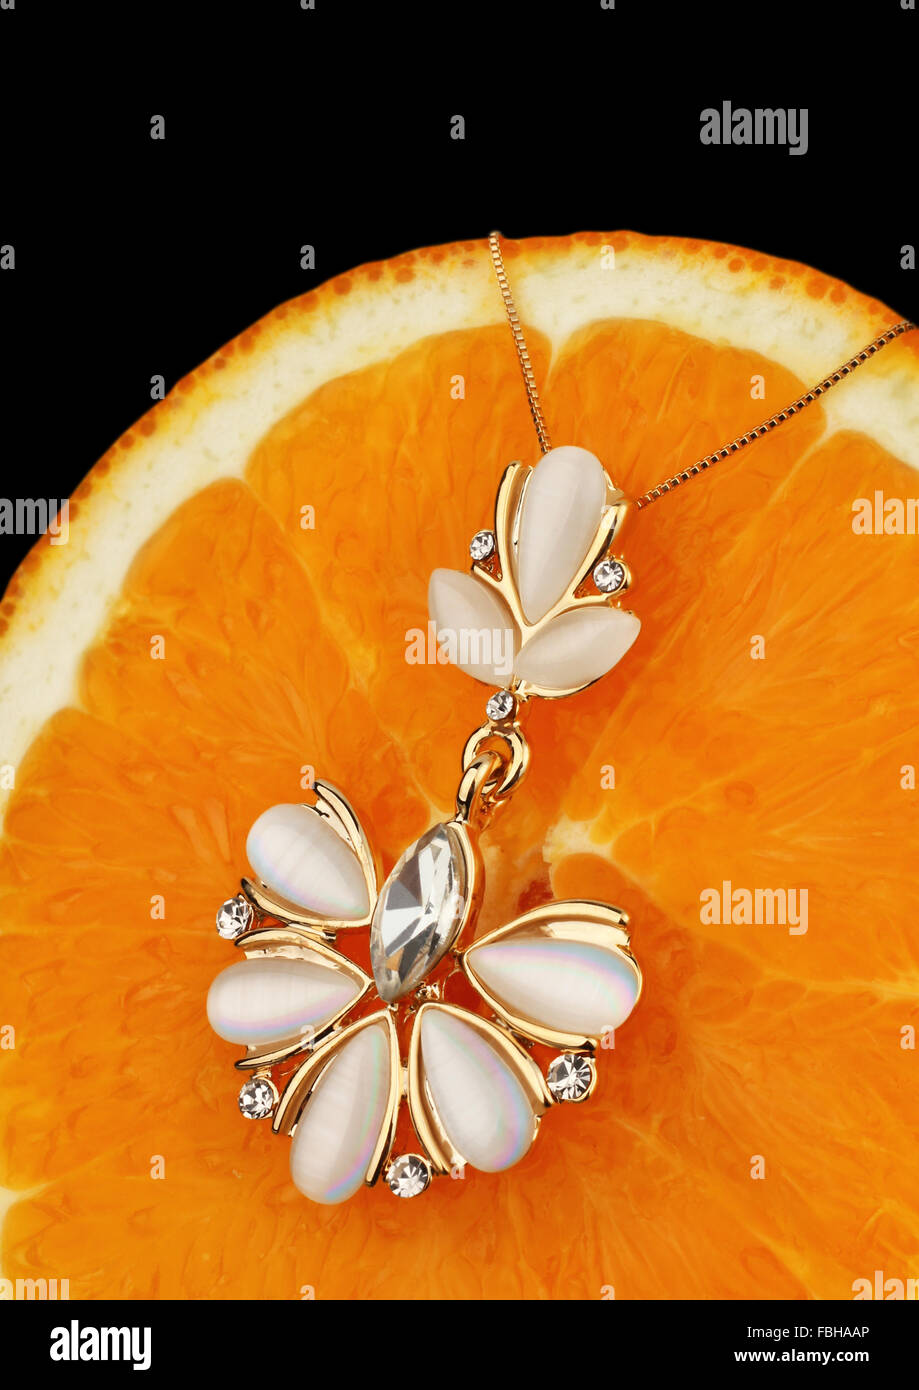 Goldschmuck mit Perlmutt und Diamanten auf orangem Hintergrund Stockfoto